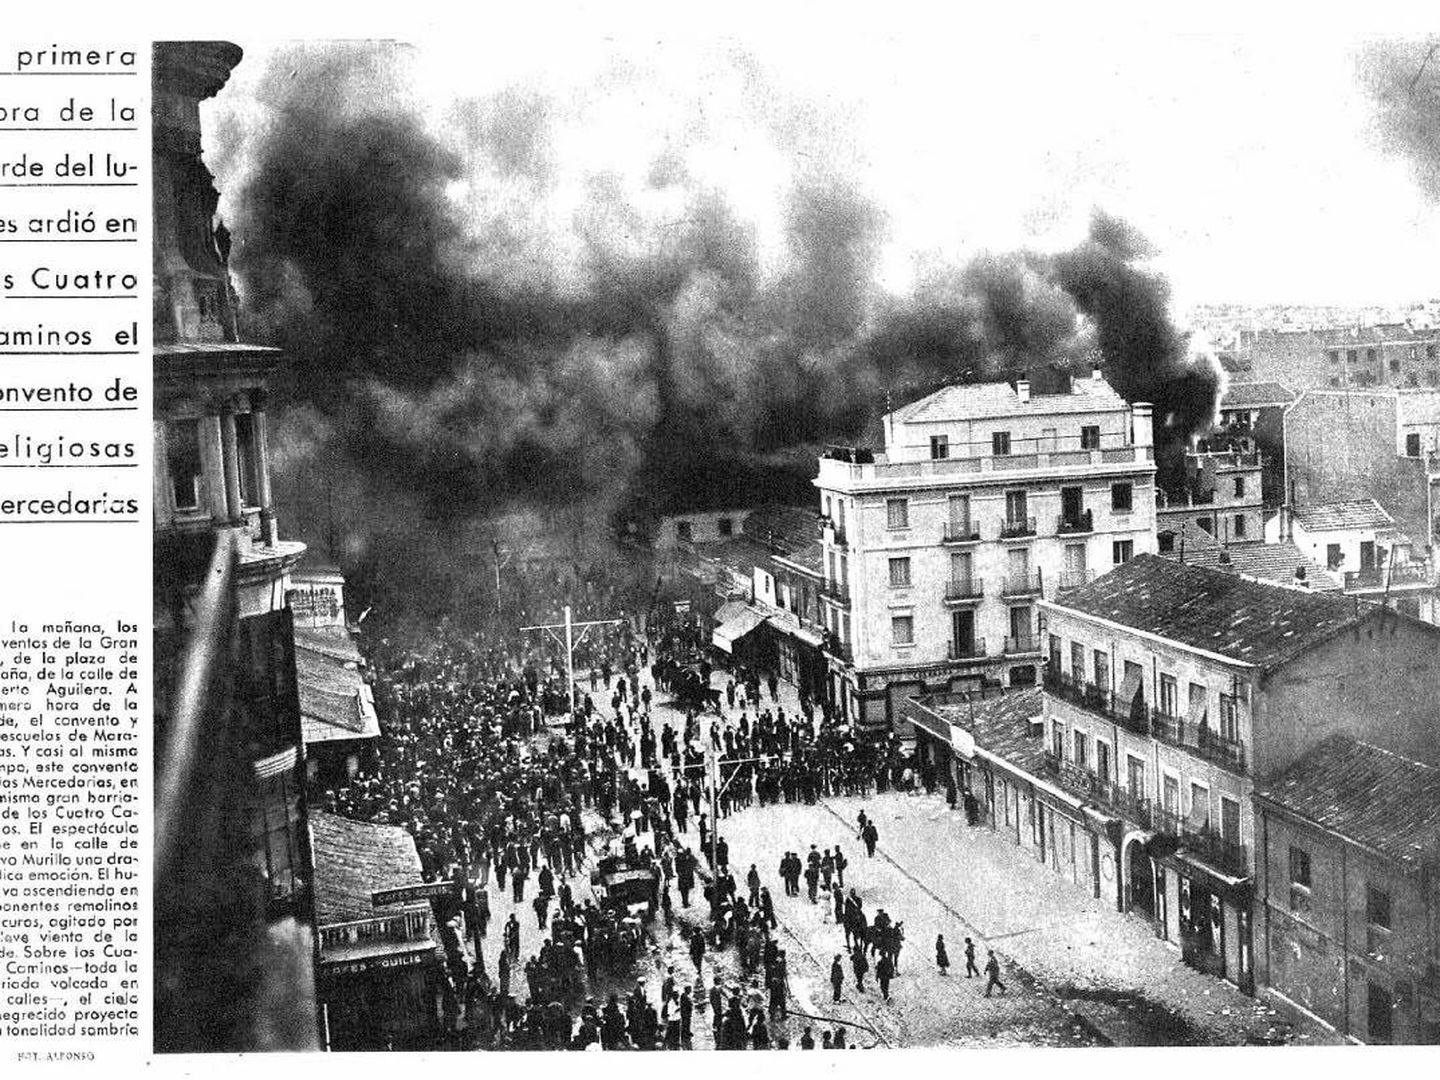 La prensa recoge la quema de conventos en Madrid en 1931